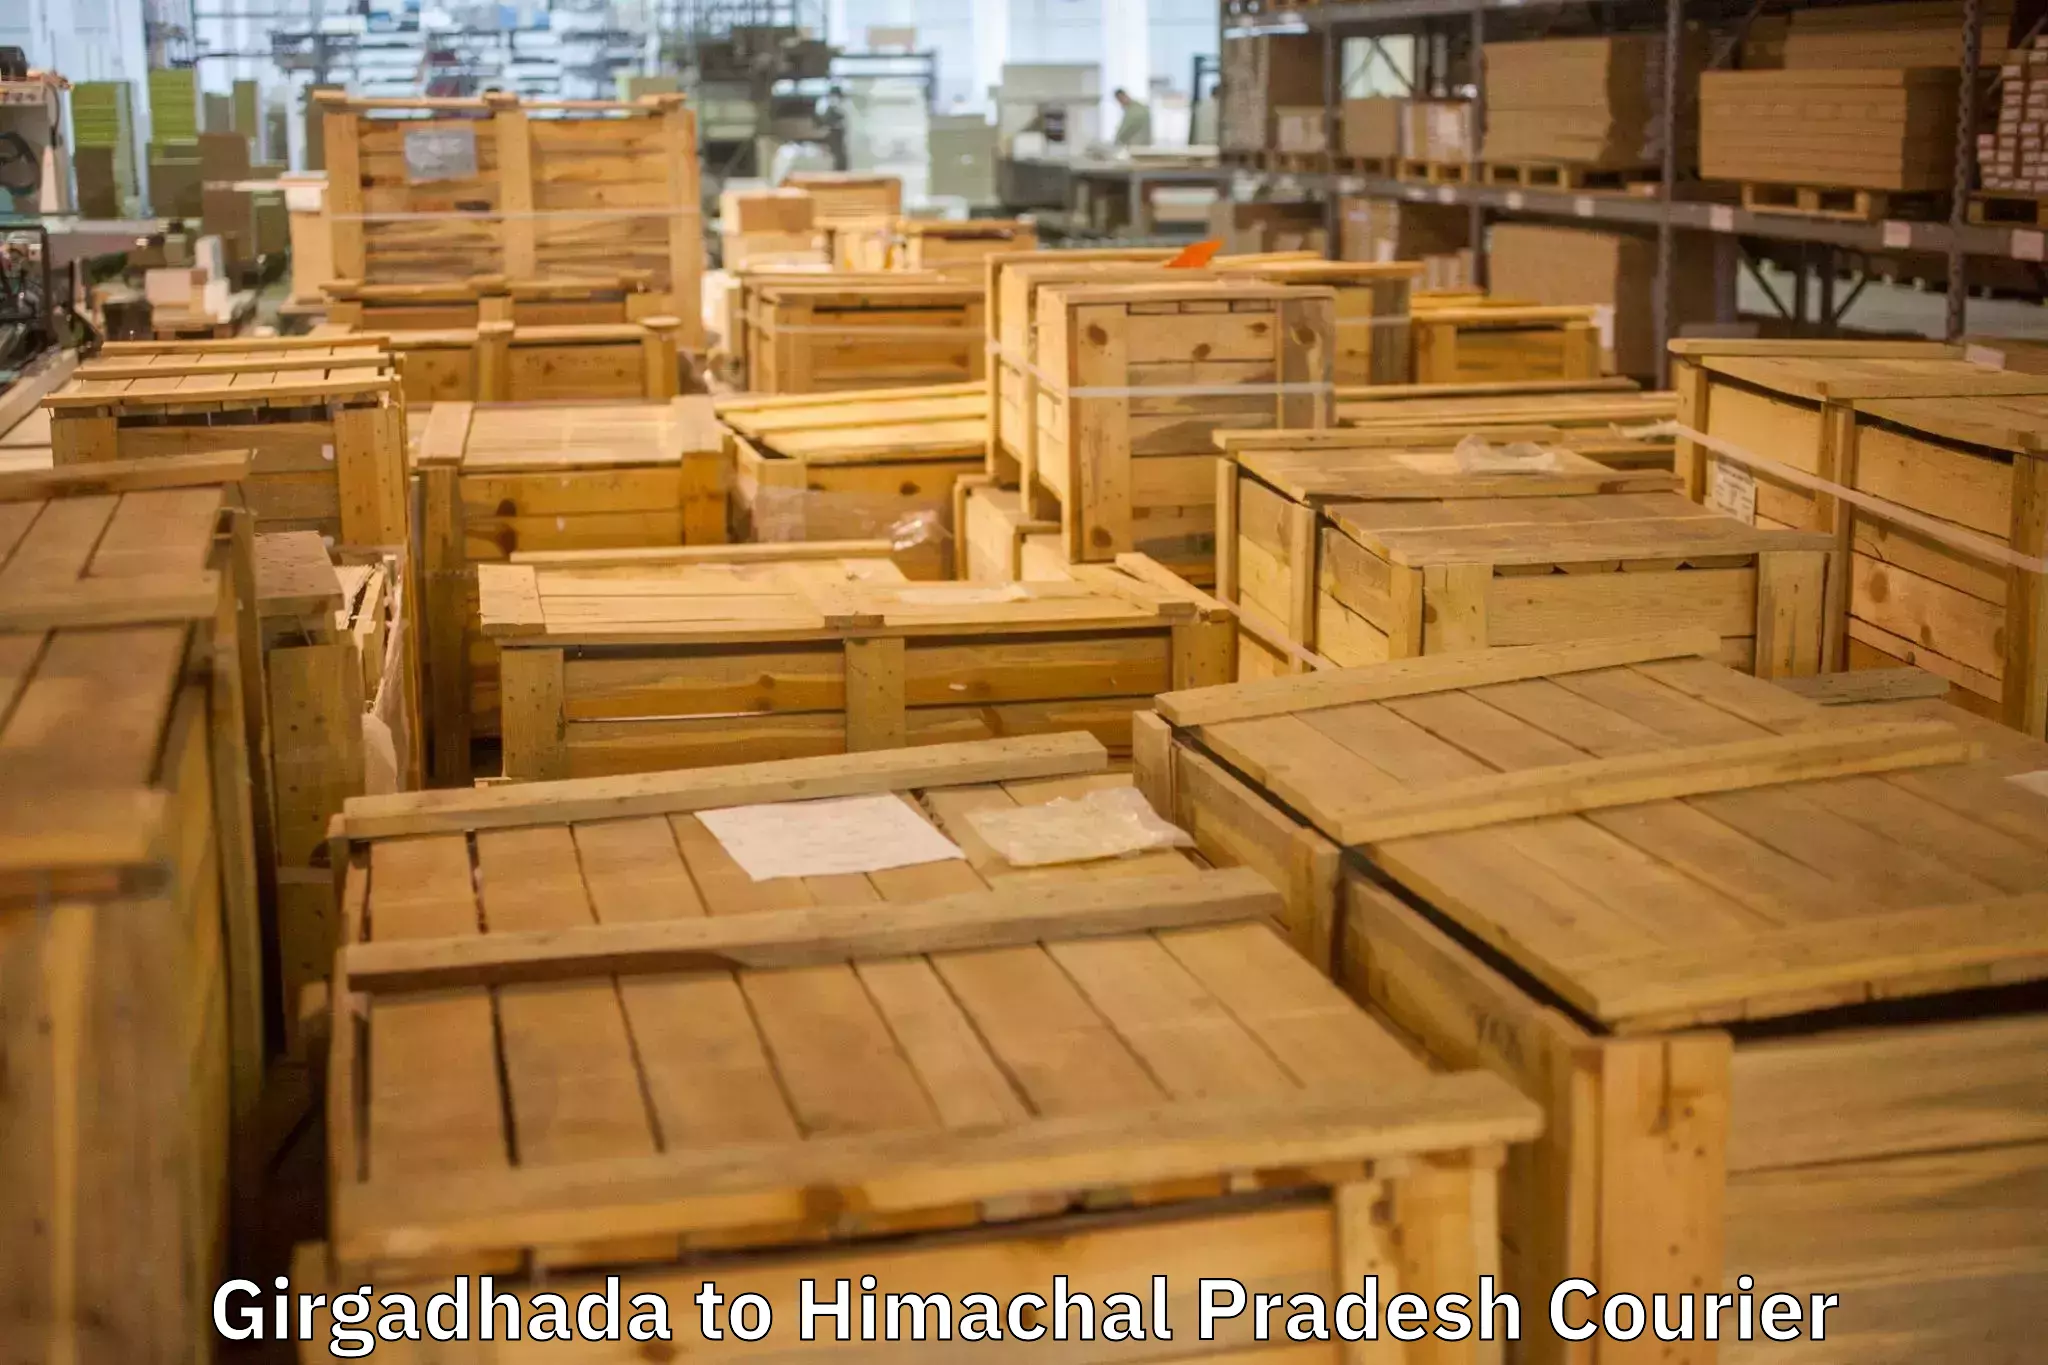 Furniture transport company Girgadhada to Chintpurni